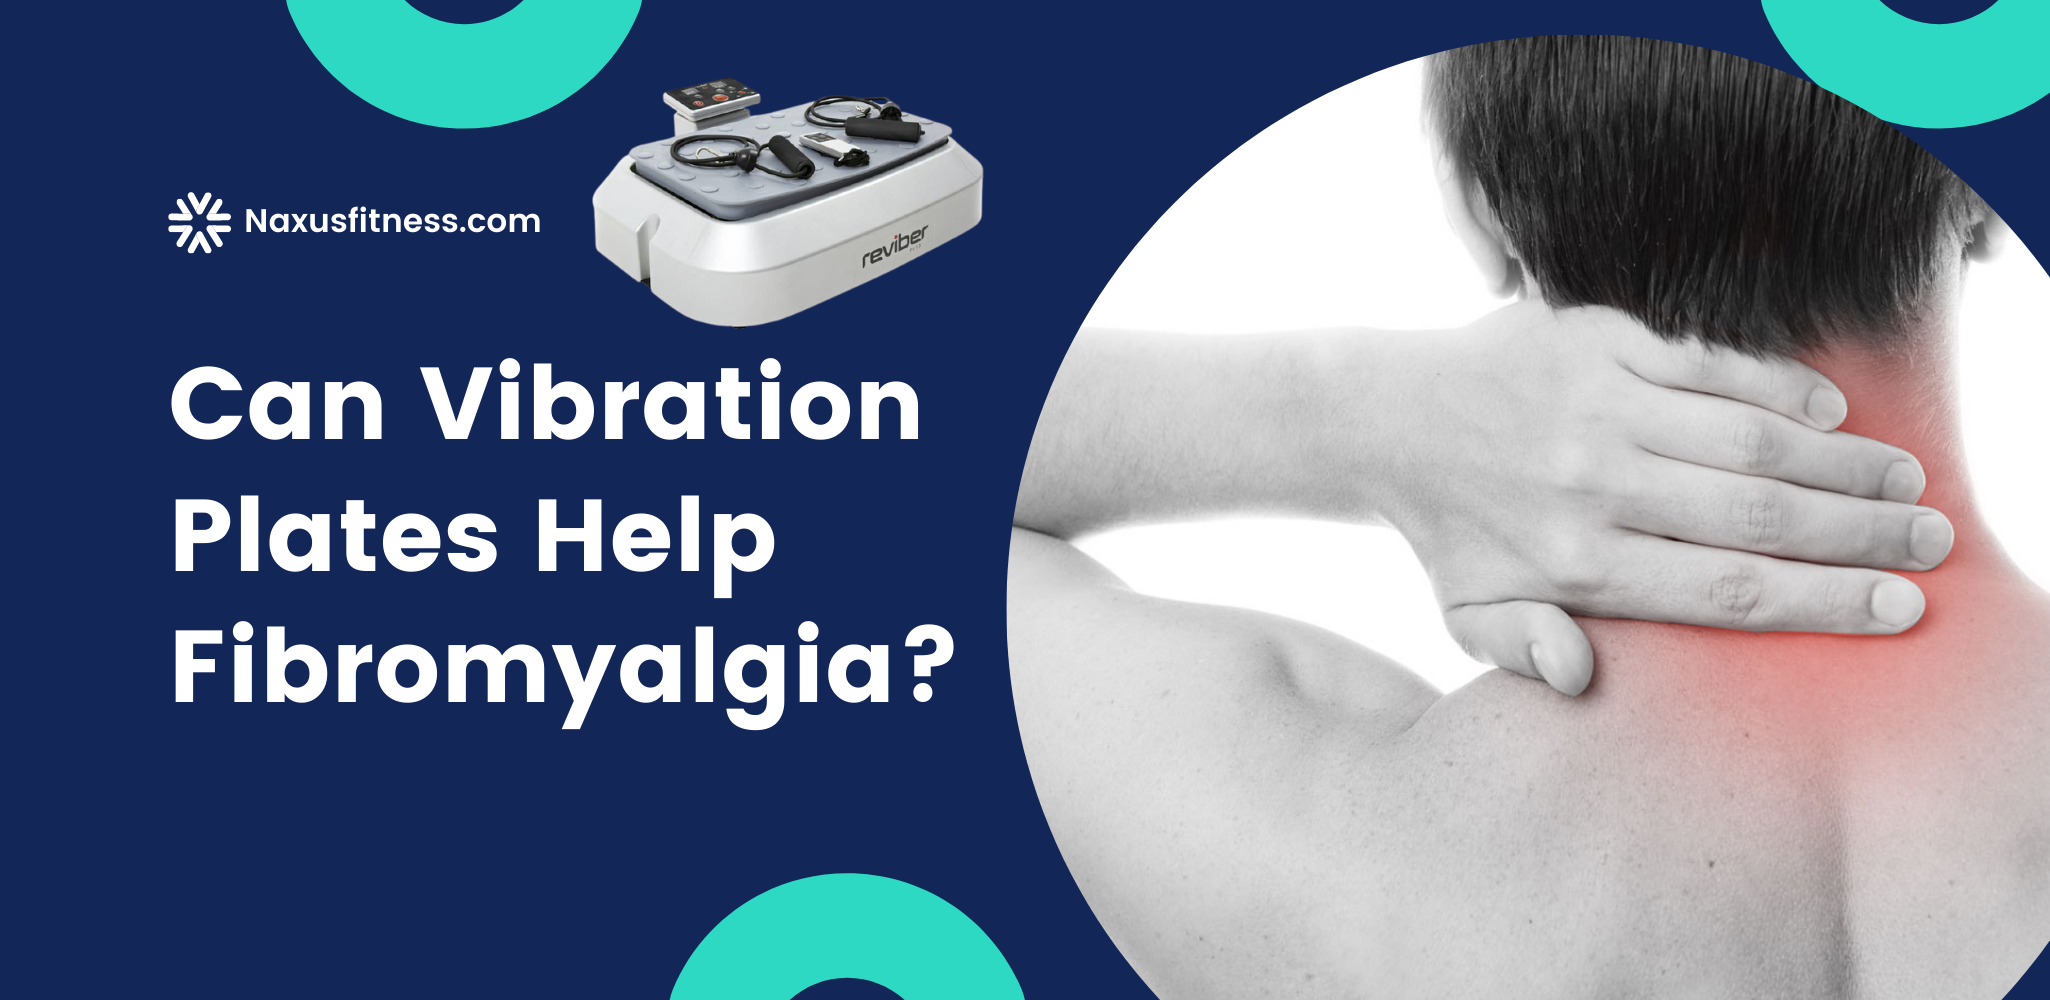 Do Vibration plates help fibromyalgia?